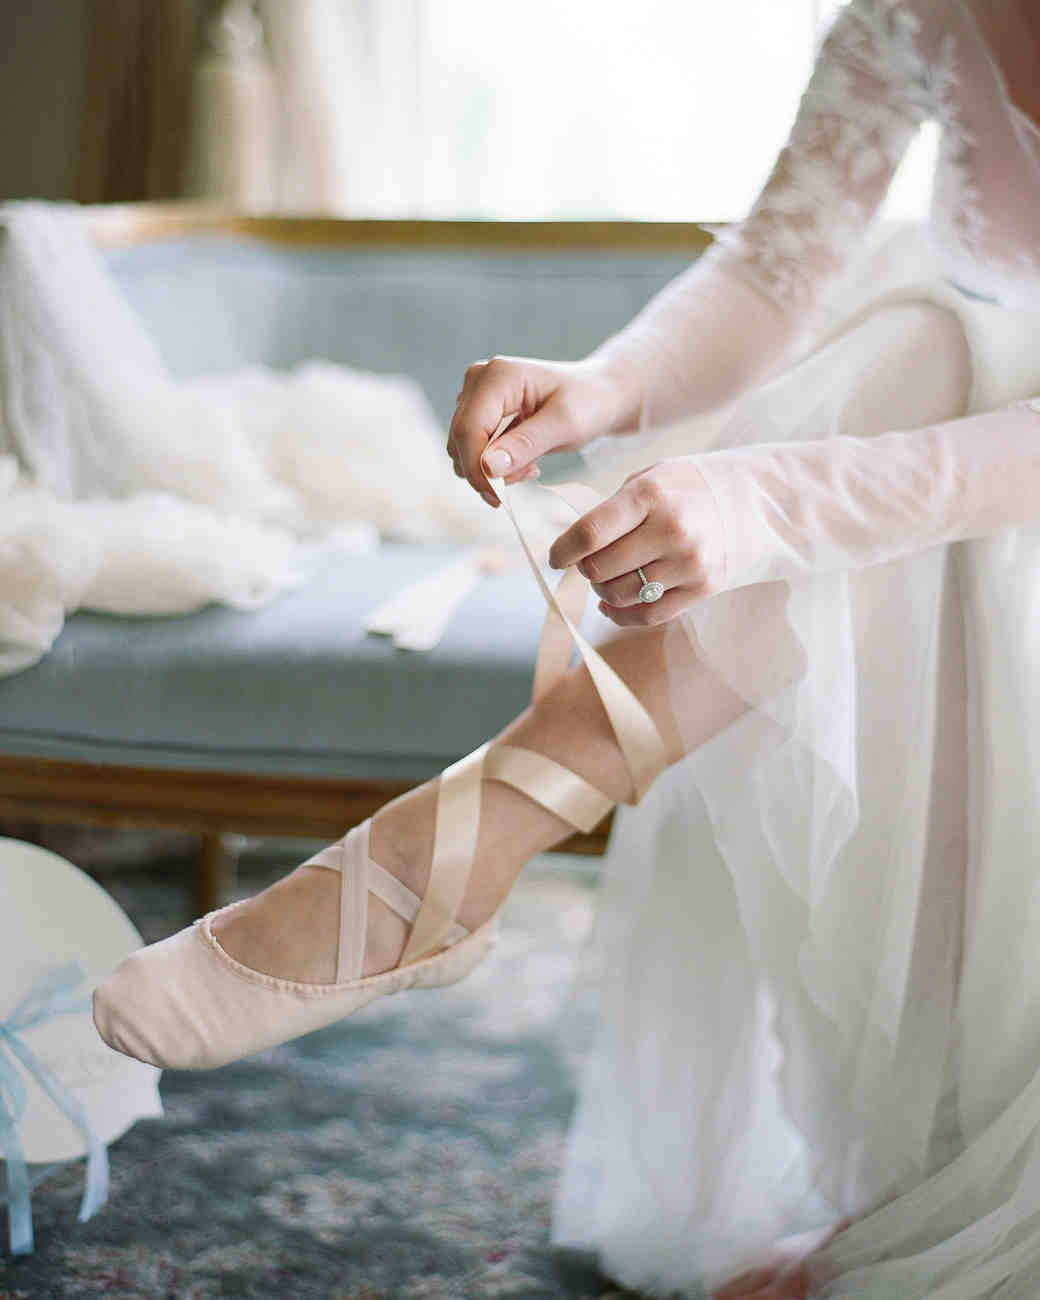 25 нетрадиционных идей свадебной обуви от стильных невест